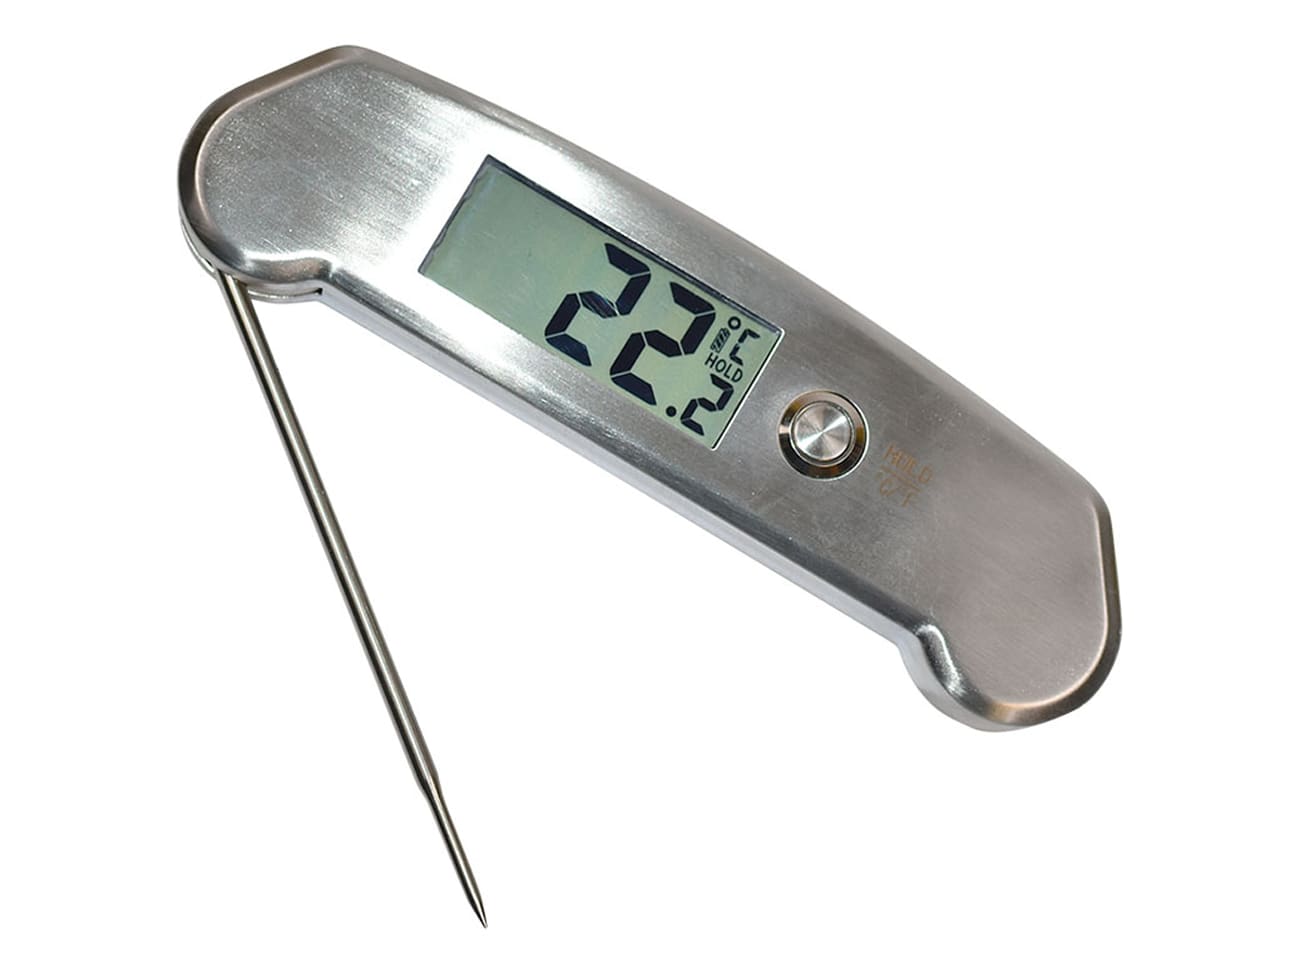 Thermomètre à viande en inox Patisse